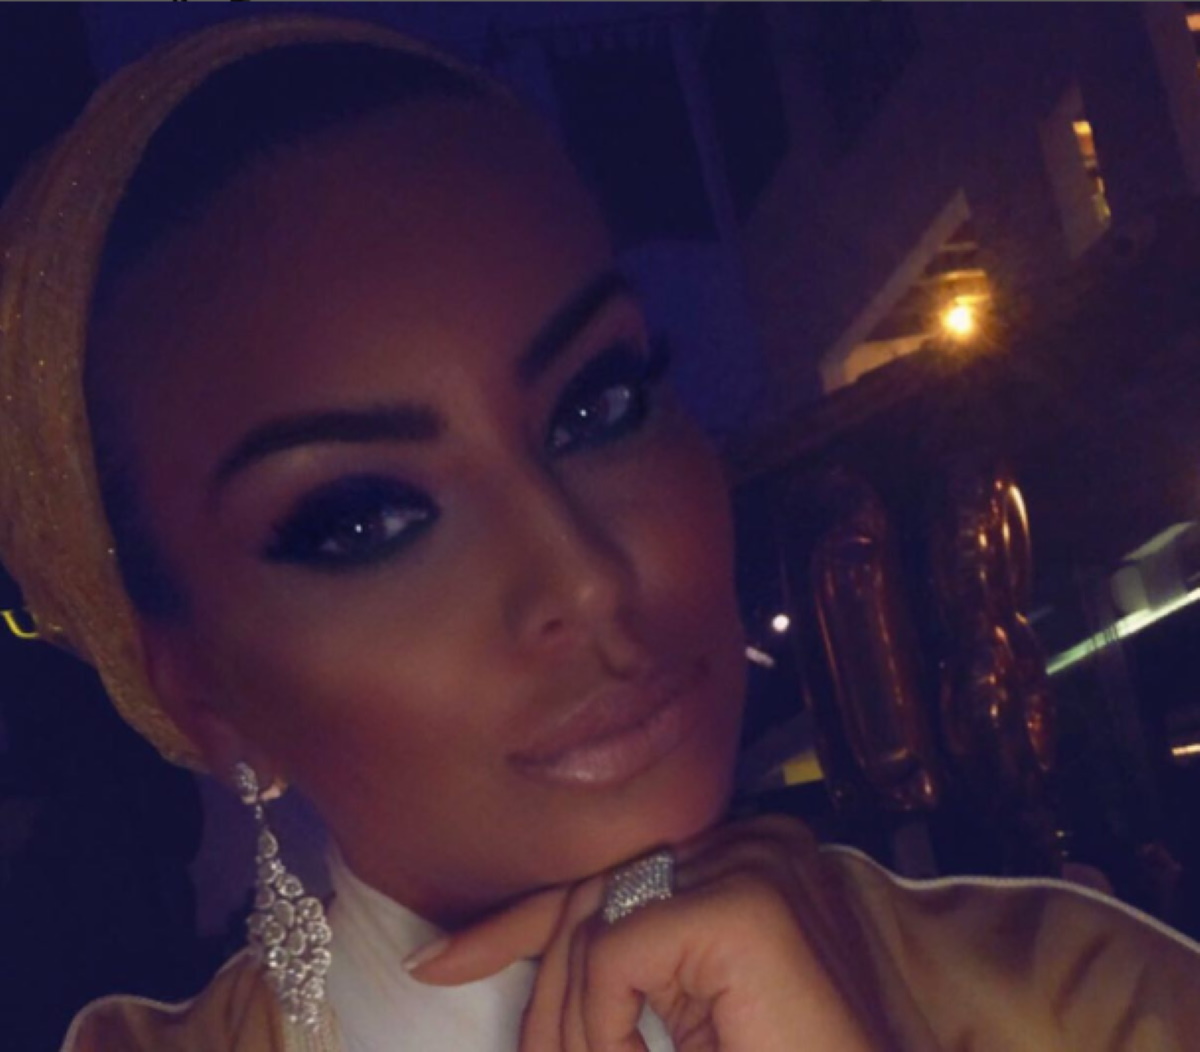 Kasia Gallanio: Αποκαλύψεις για την πρώην πριγκίπισσα Κατάρ – Τη βρήκαν νεκρή μετά από τέσσερις ημέρες